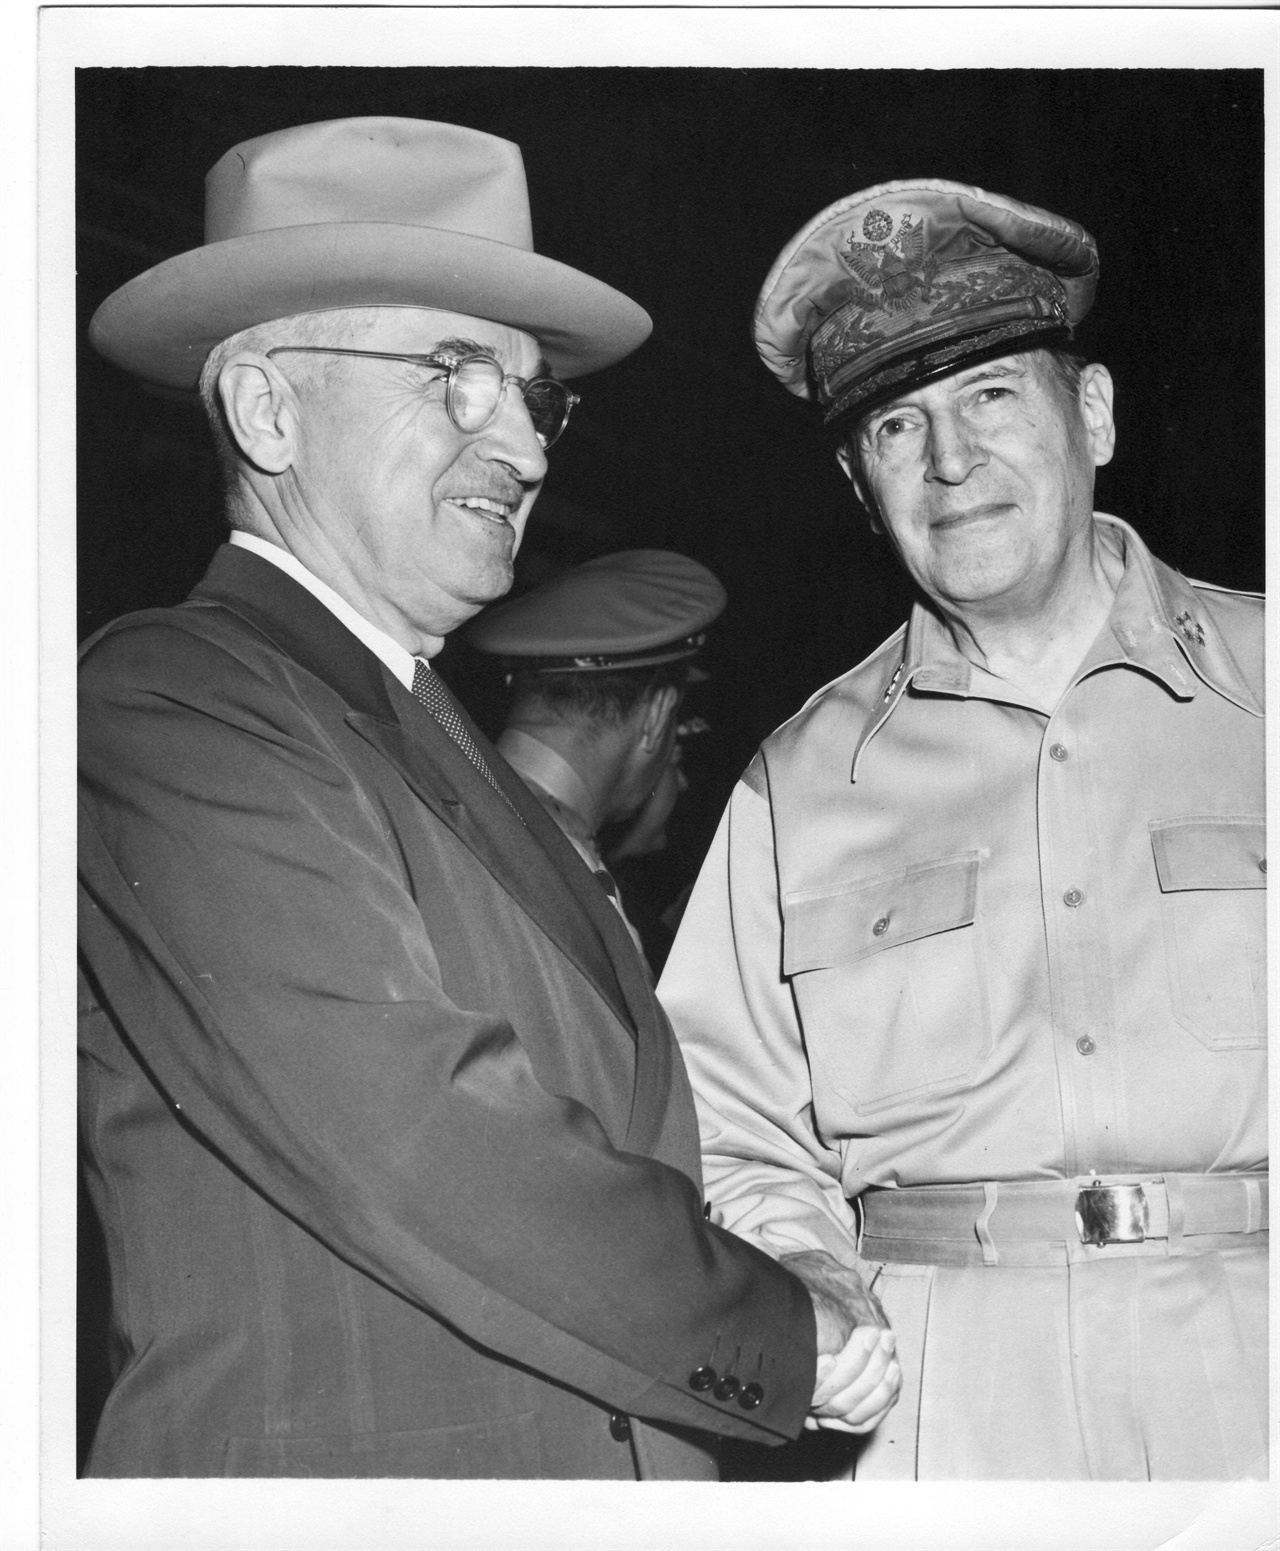 1950. 10. 15. 트루먼 미 대통령과 맥아더 장군이 Wake 섬에서 한국전쟁 전황을 논의하고 있다. 